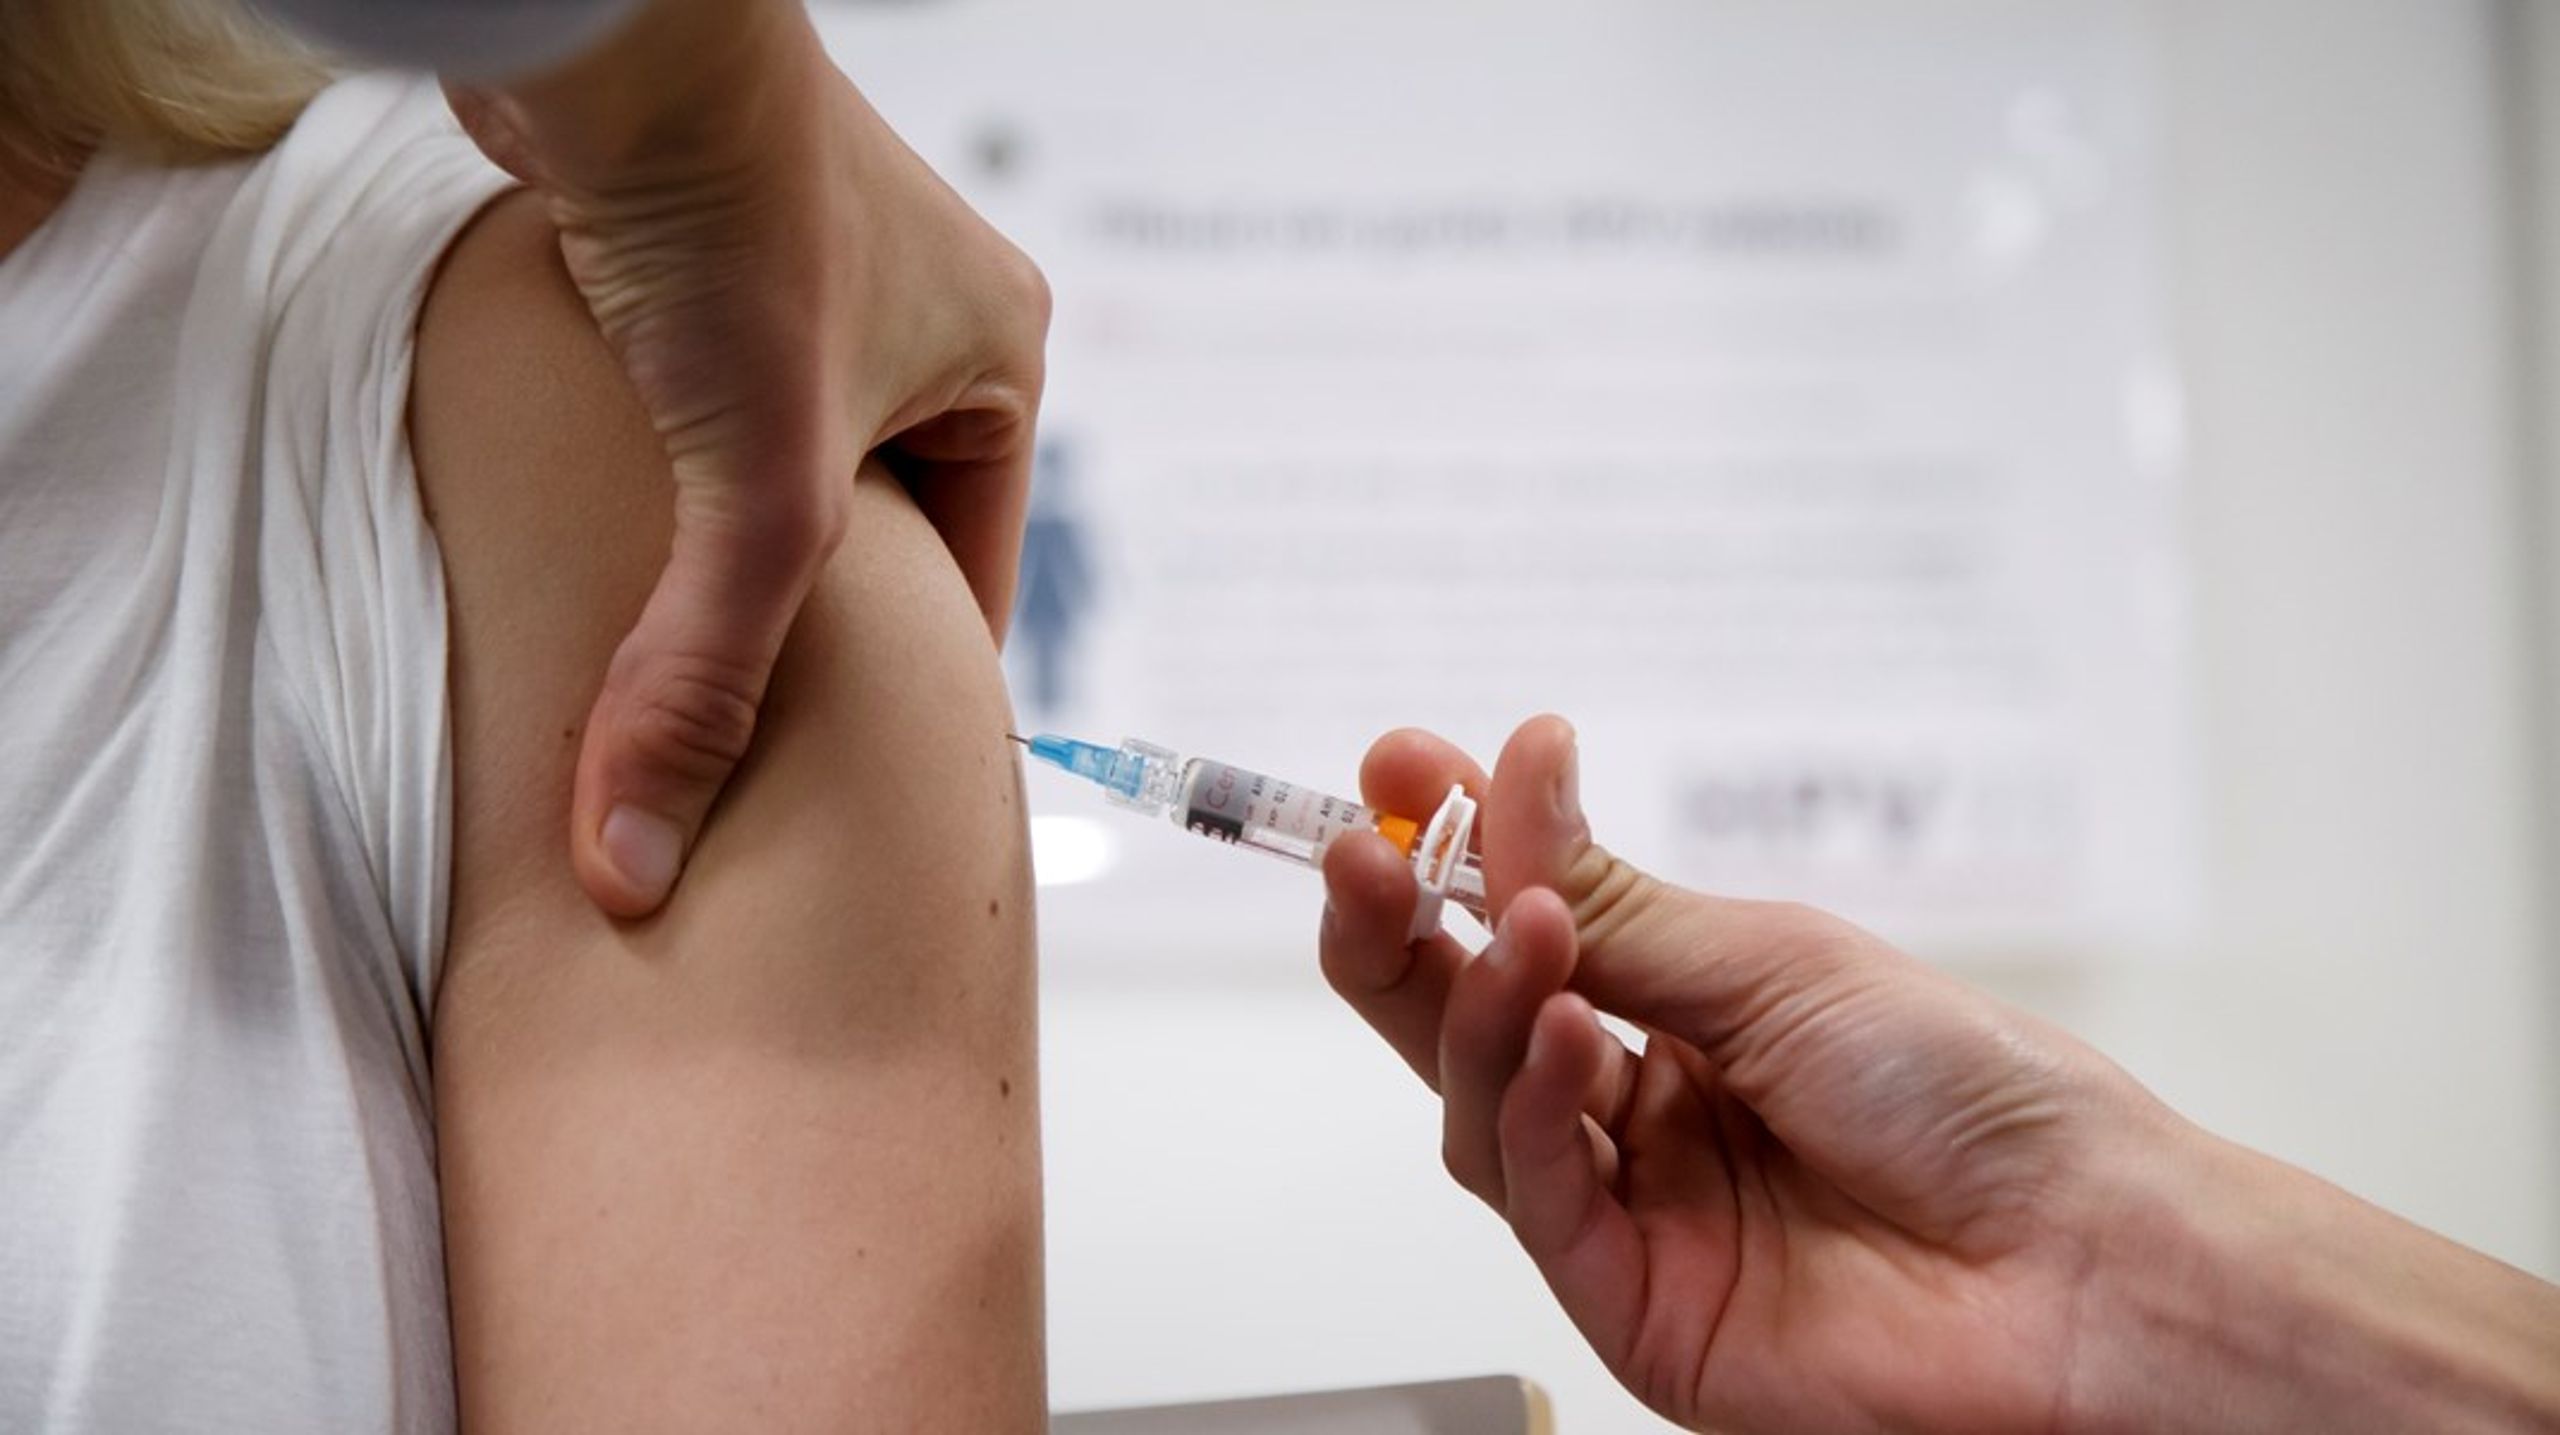 ”Massvaccinationen beräknas pågå från hösten 2021 till våren 2022. Kvinnor som får HPV-vaccin skyddas mot livmoderhalscancer till 90 procent, vilket är ett gott skydd.”